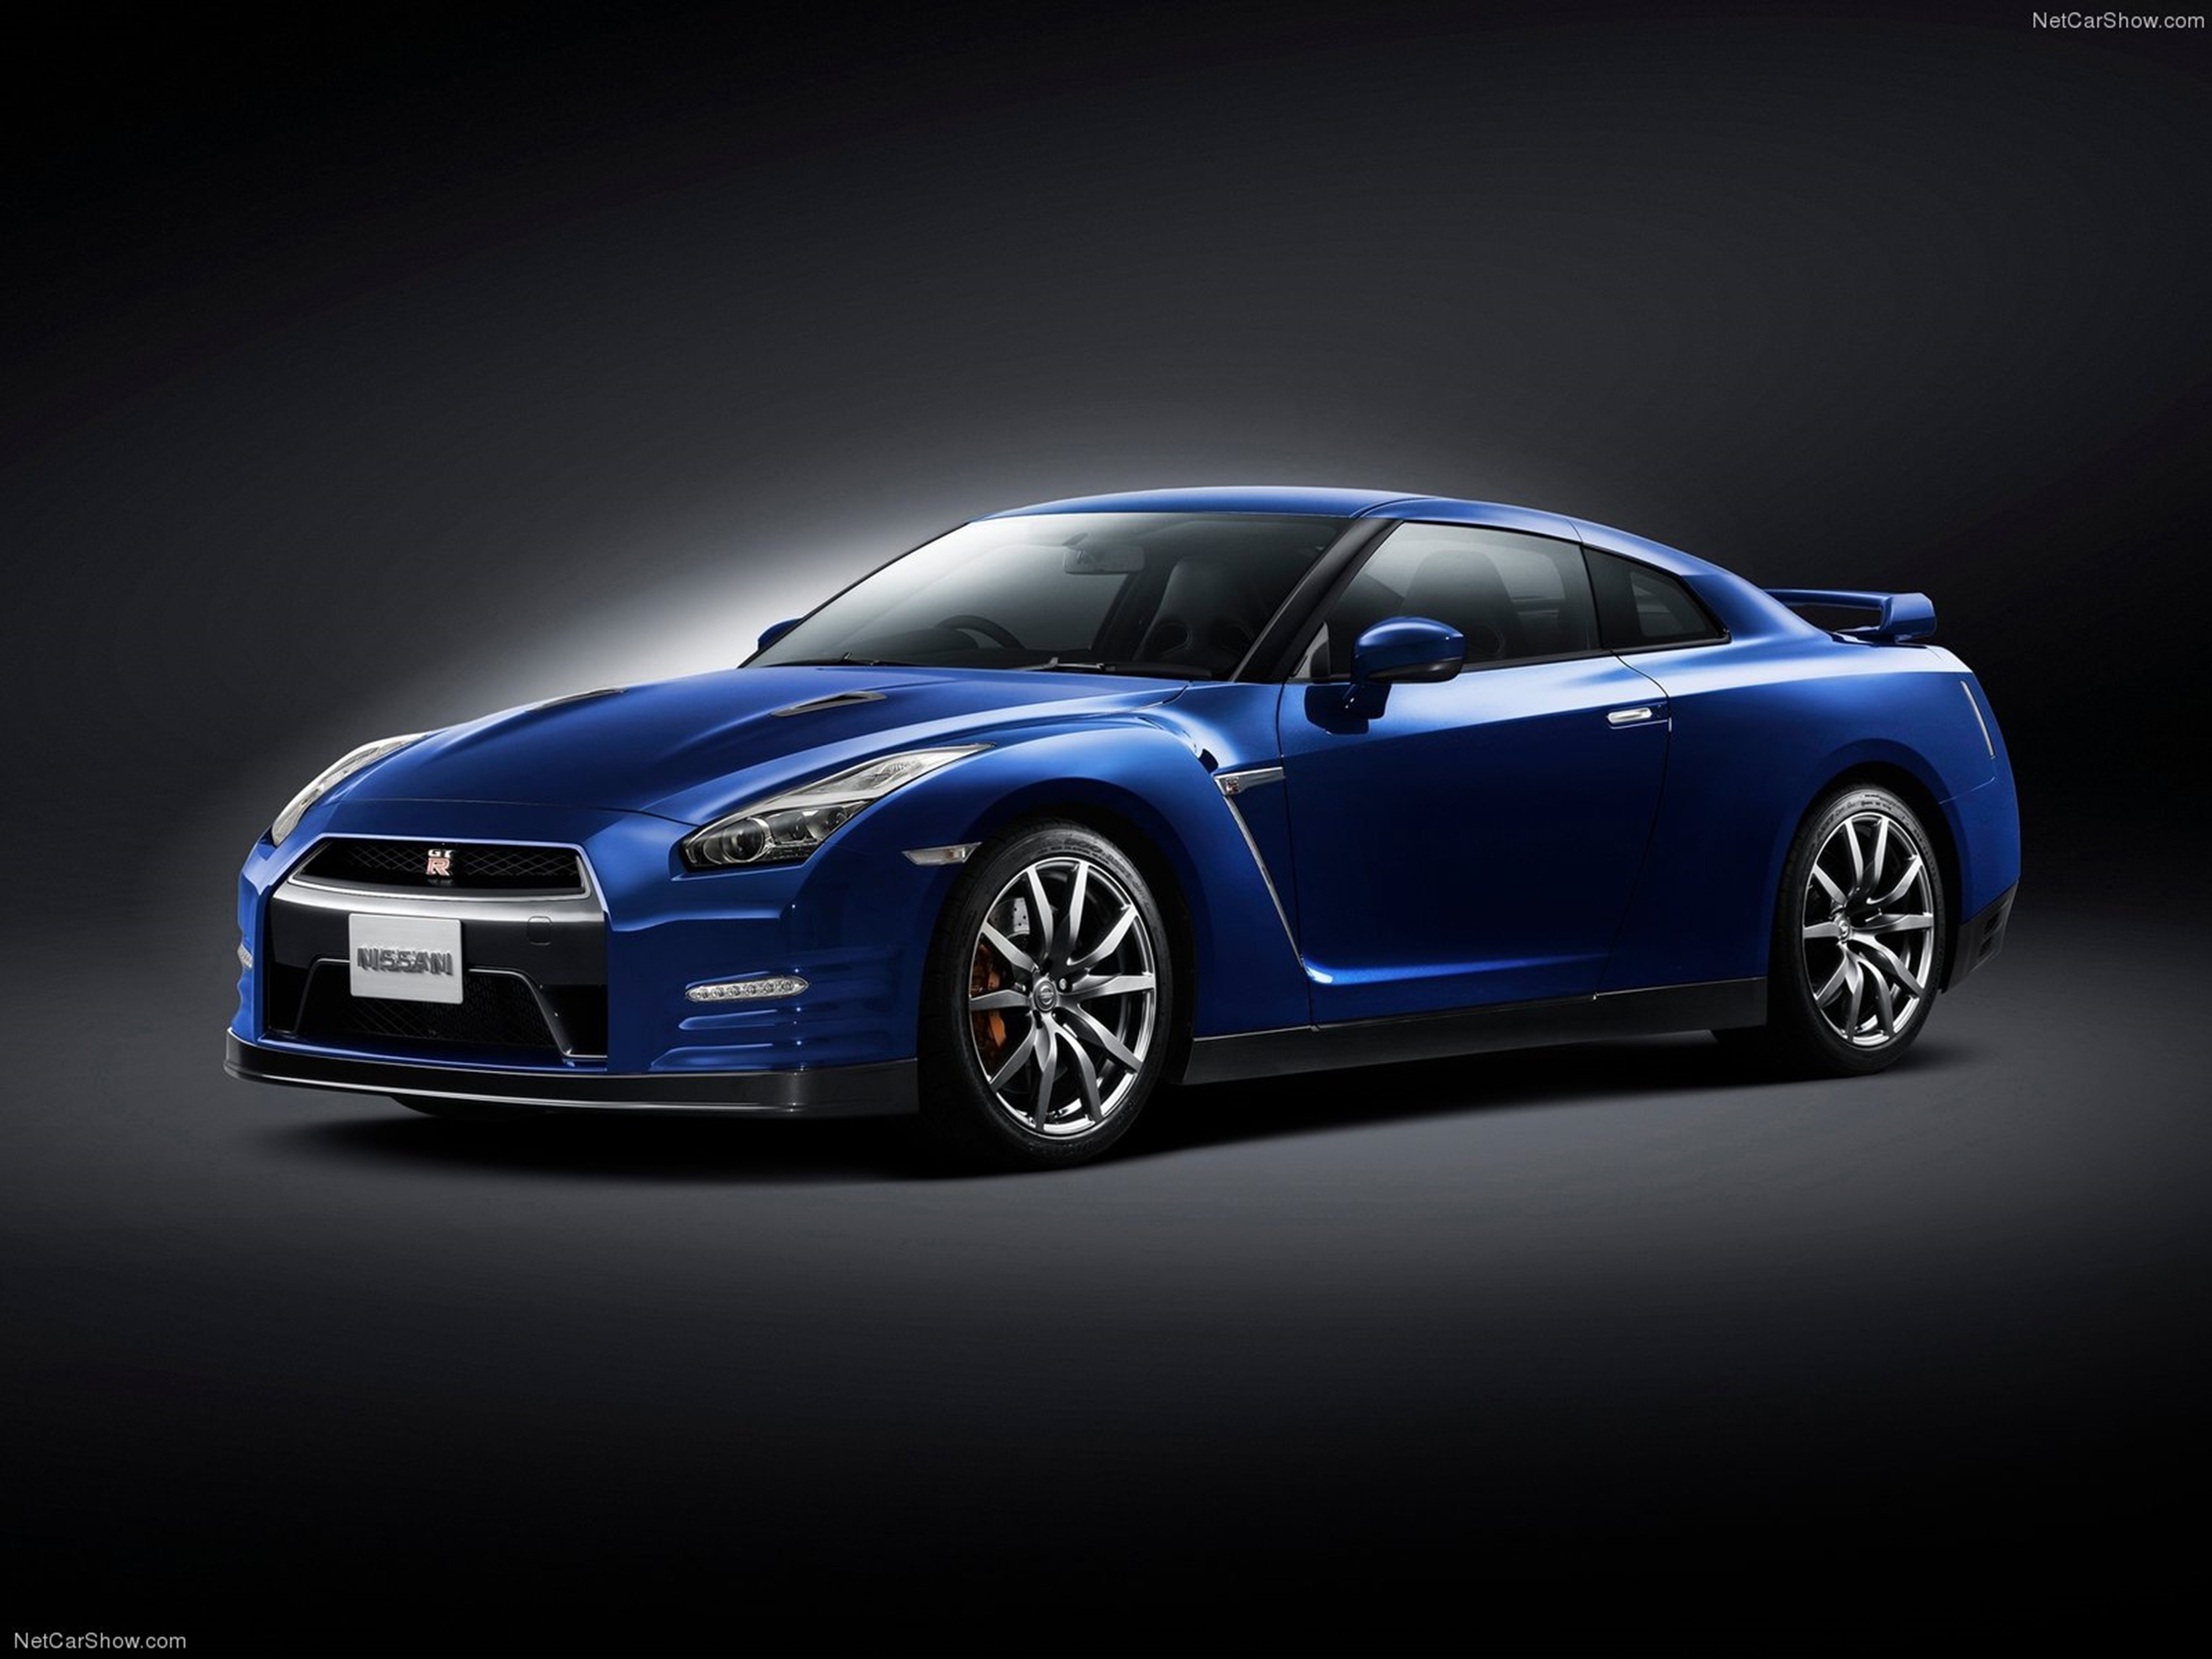 Nissan, Gt R, 2015, Supercar, Car, Godzilar, Blue, - Nissan Gtr 2015 Blue , HD Wallpaper & Backgrounds